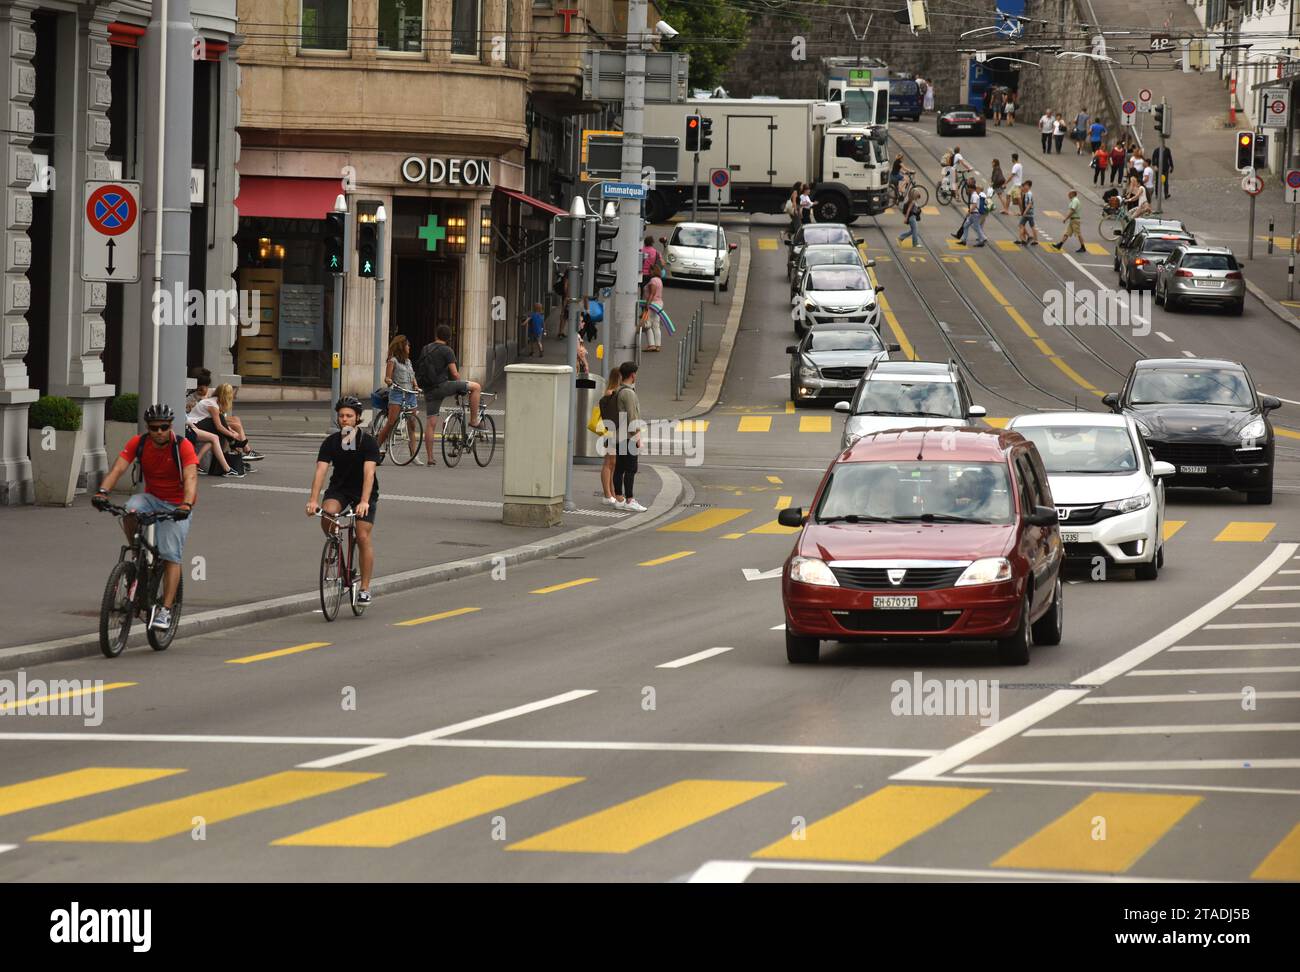 Zürich, Schweiz - 03. Juni 2017: Radfahrer und Autos auf der Straße von Zürich. Der Alltag in Zürich. Stockfoto